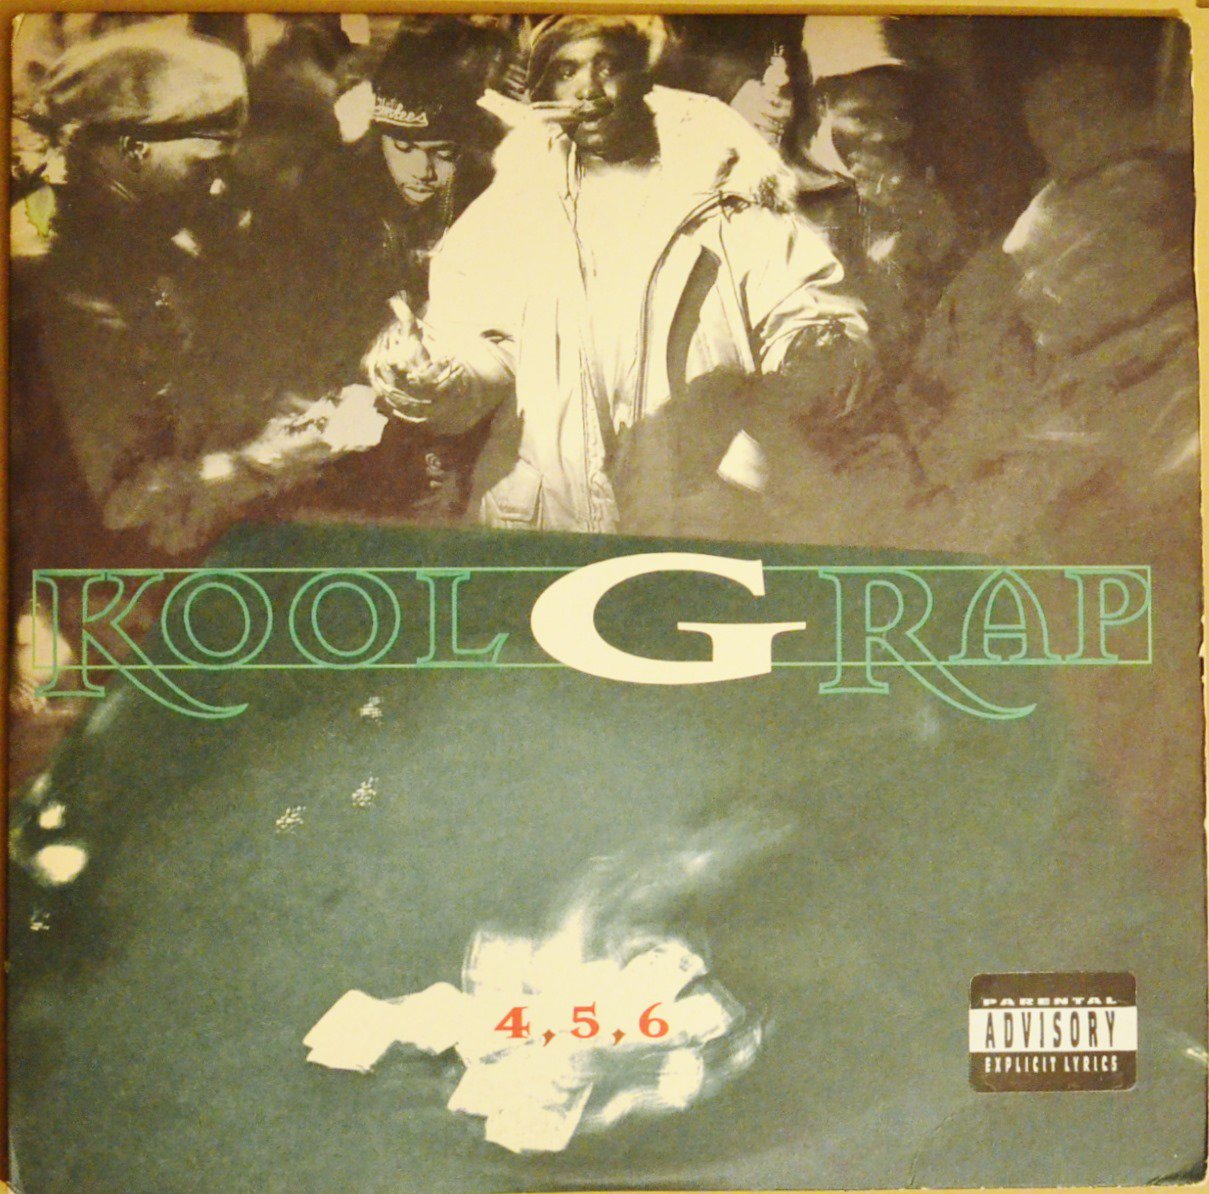 KOOL G RAP / 4, 5, 6 USオリジナル盤LP - 洋楽